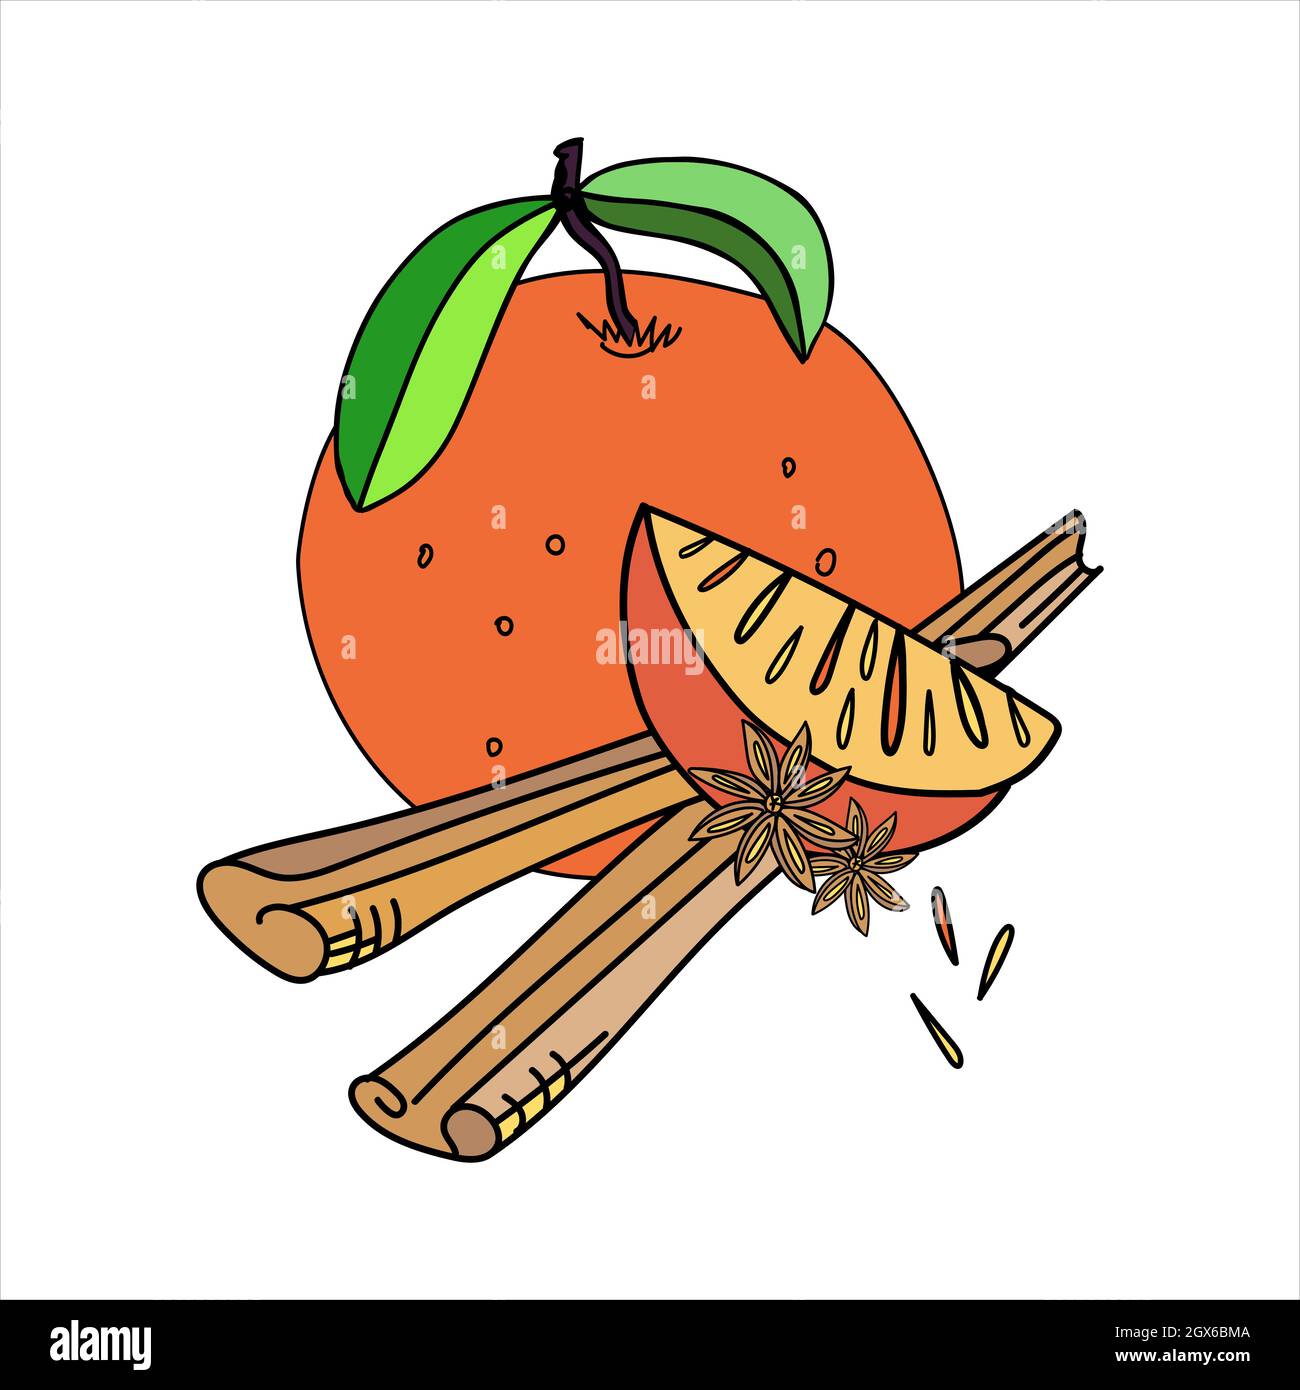 Vektor-Illustration von Orange mit orangefarbenem Keil und Zimt im Doodle-Stil. Stock Vektor